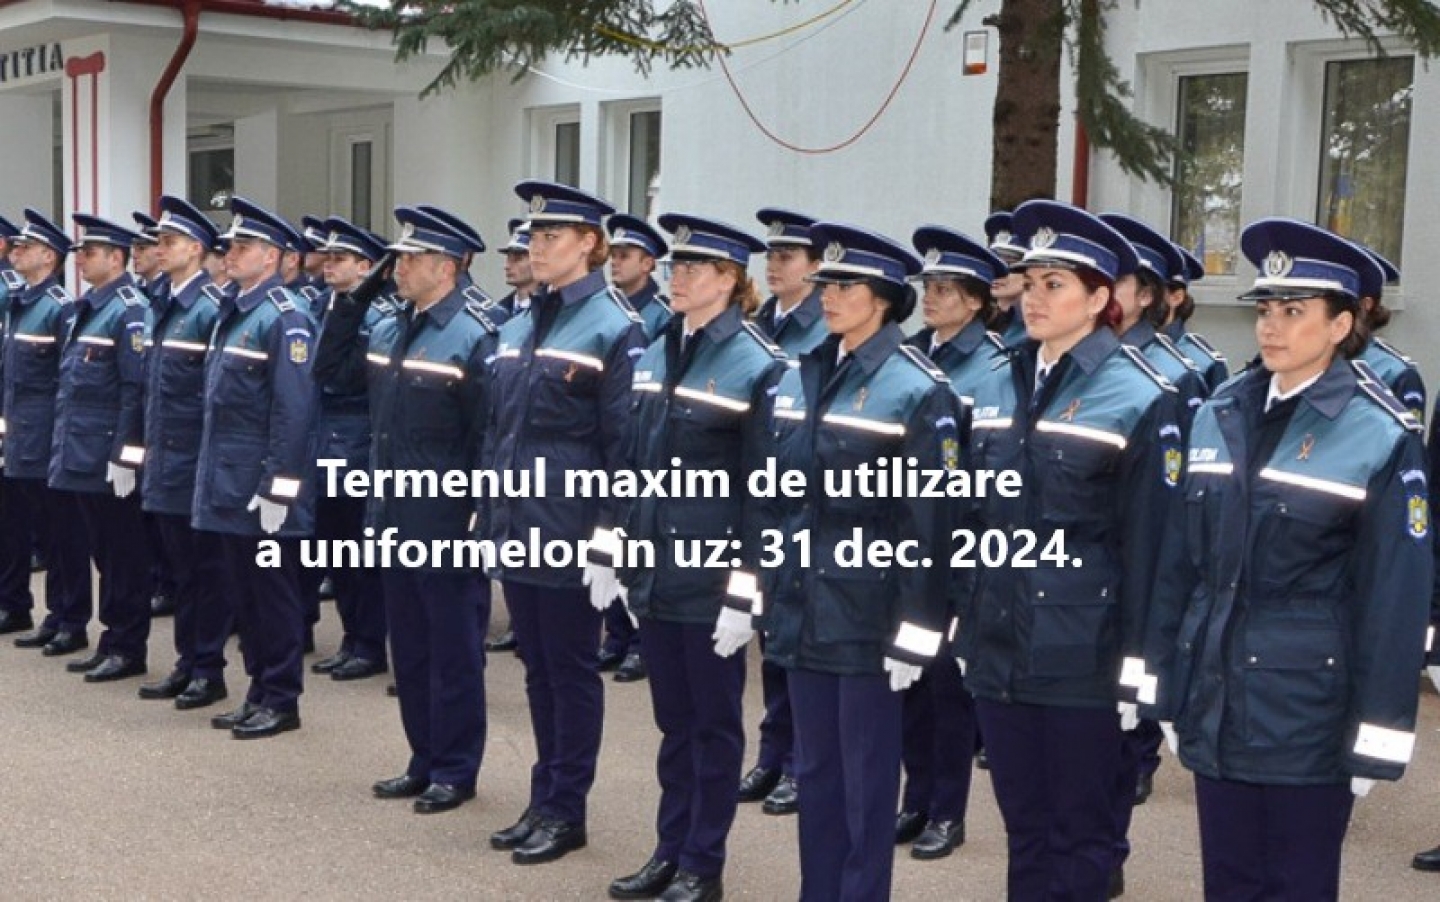 Much Ananiver Derive 23.11.2021 - Proiectul OMAI privind noile uniforme și însemne ale  structurilor polițienești, pus în dezbatere publică | SNPPC